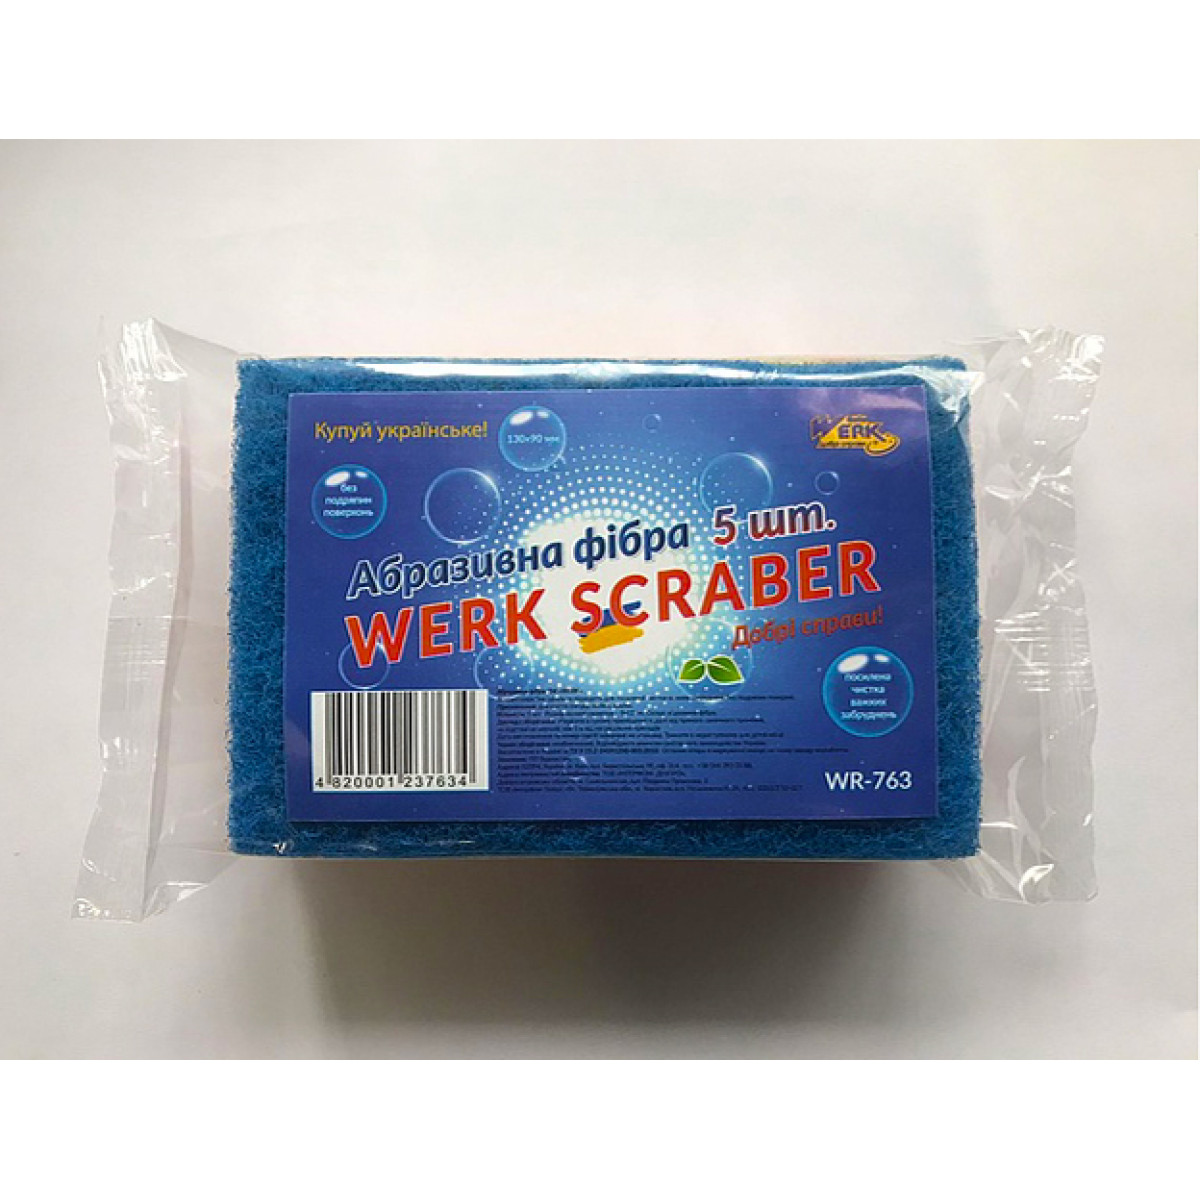 Абразивная фибра Scraber 5 шт WR763 WERK